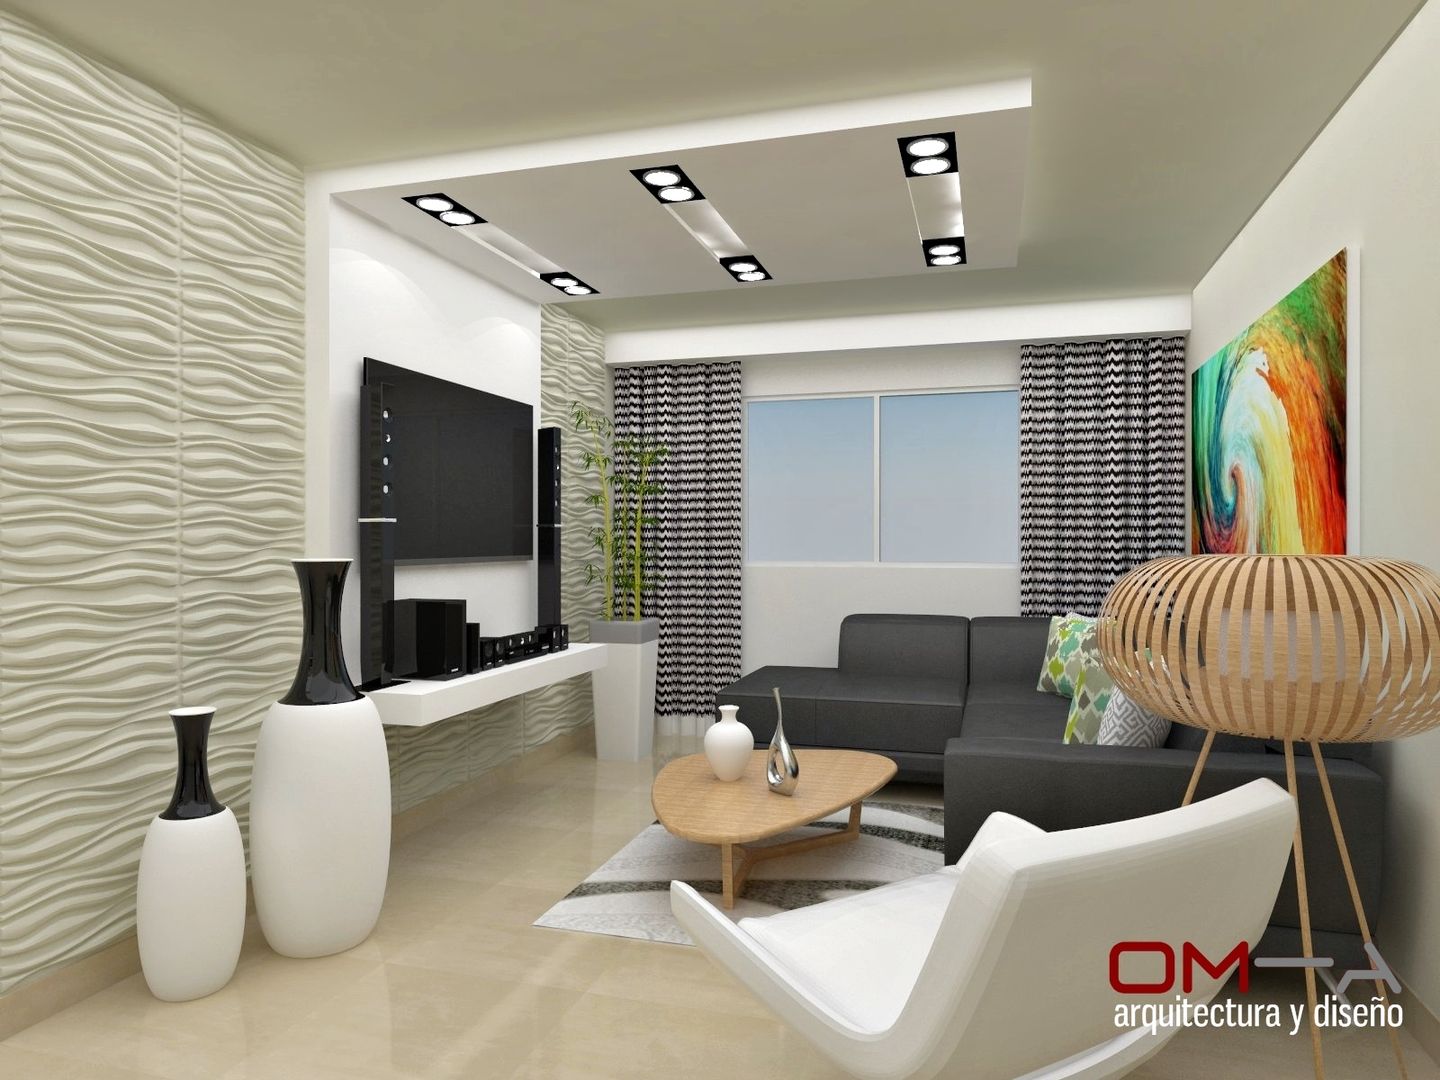 Diseño interior en apartamento, espacio sala om-a arquitectura y diseño Salas modernas